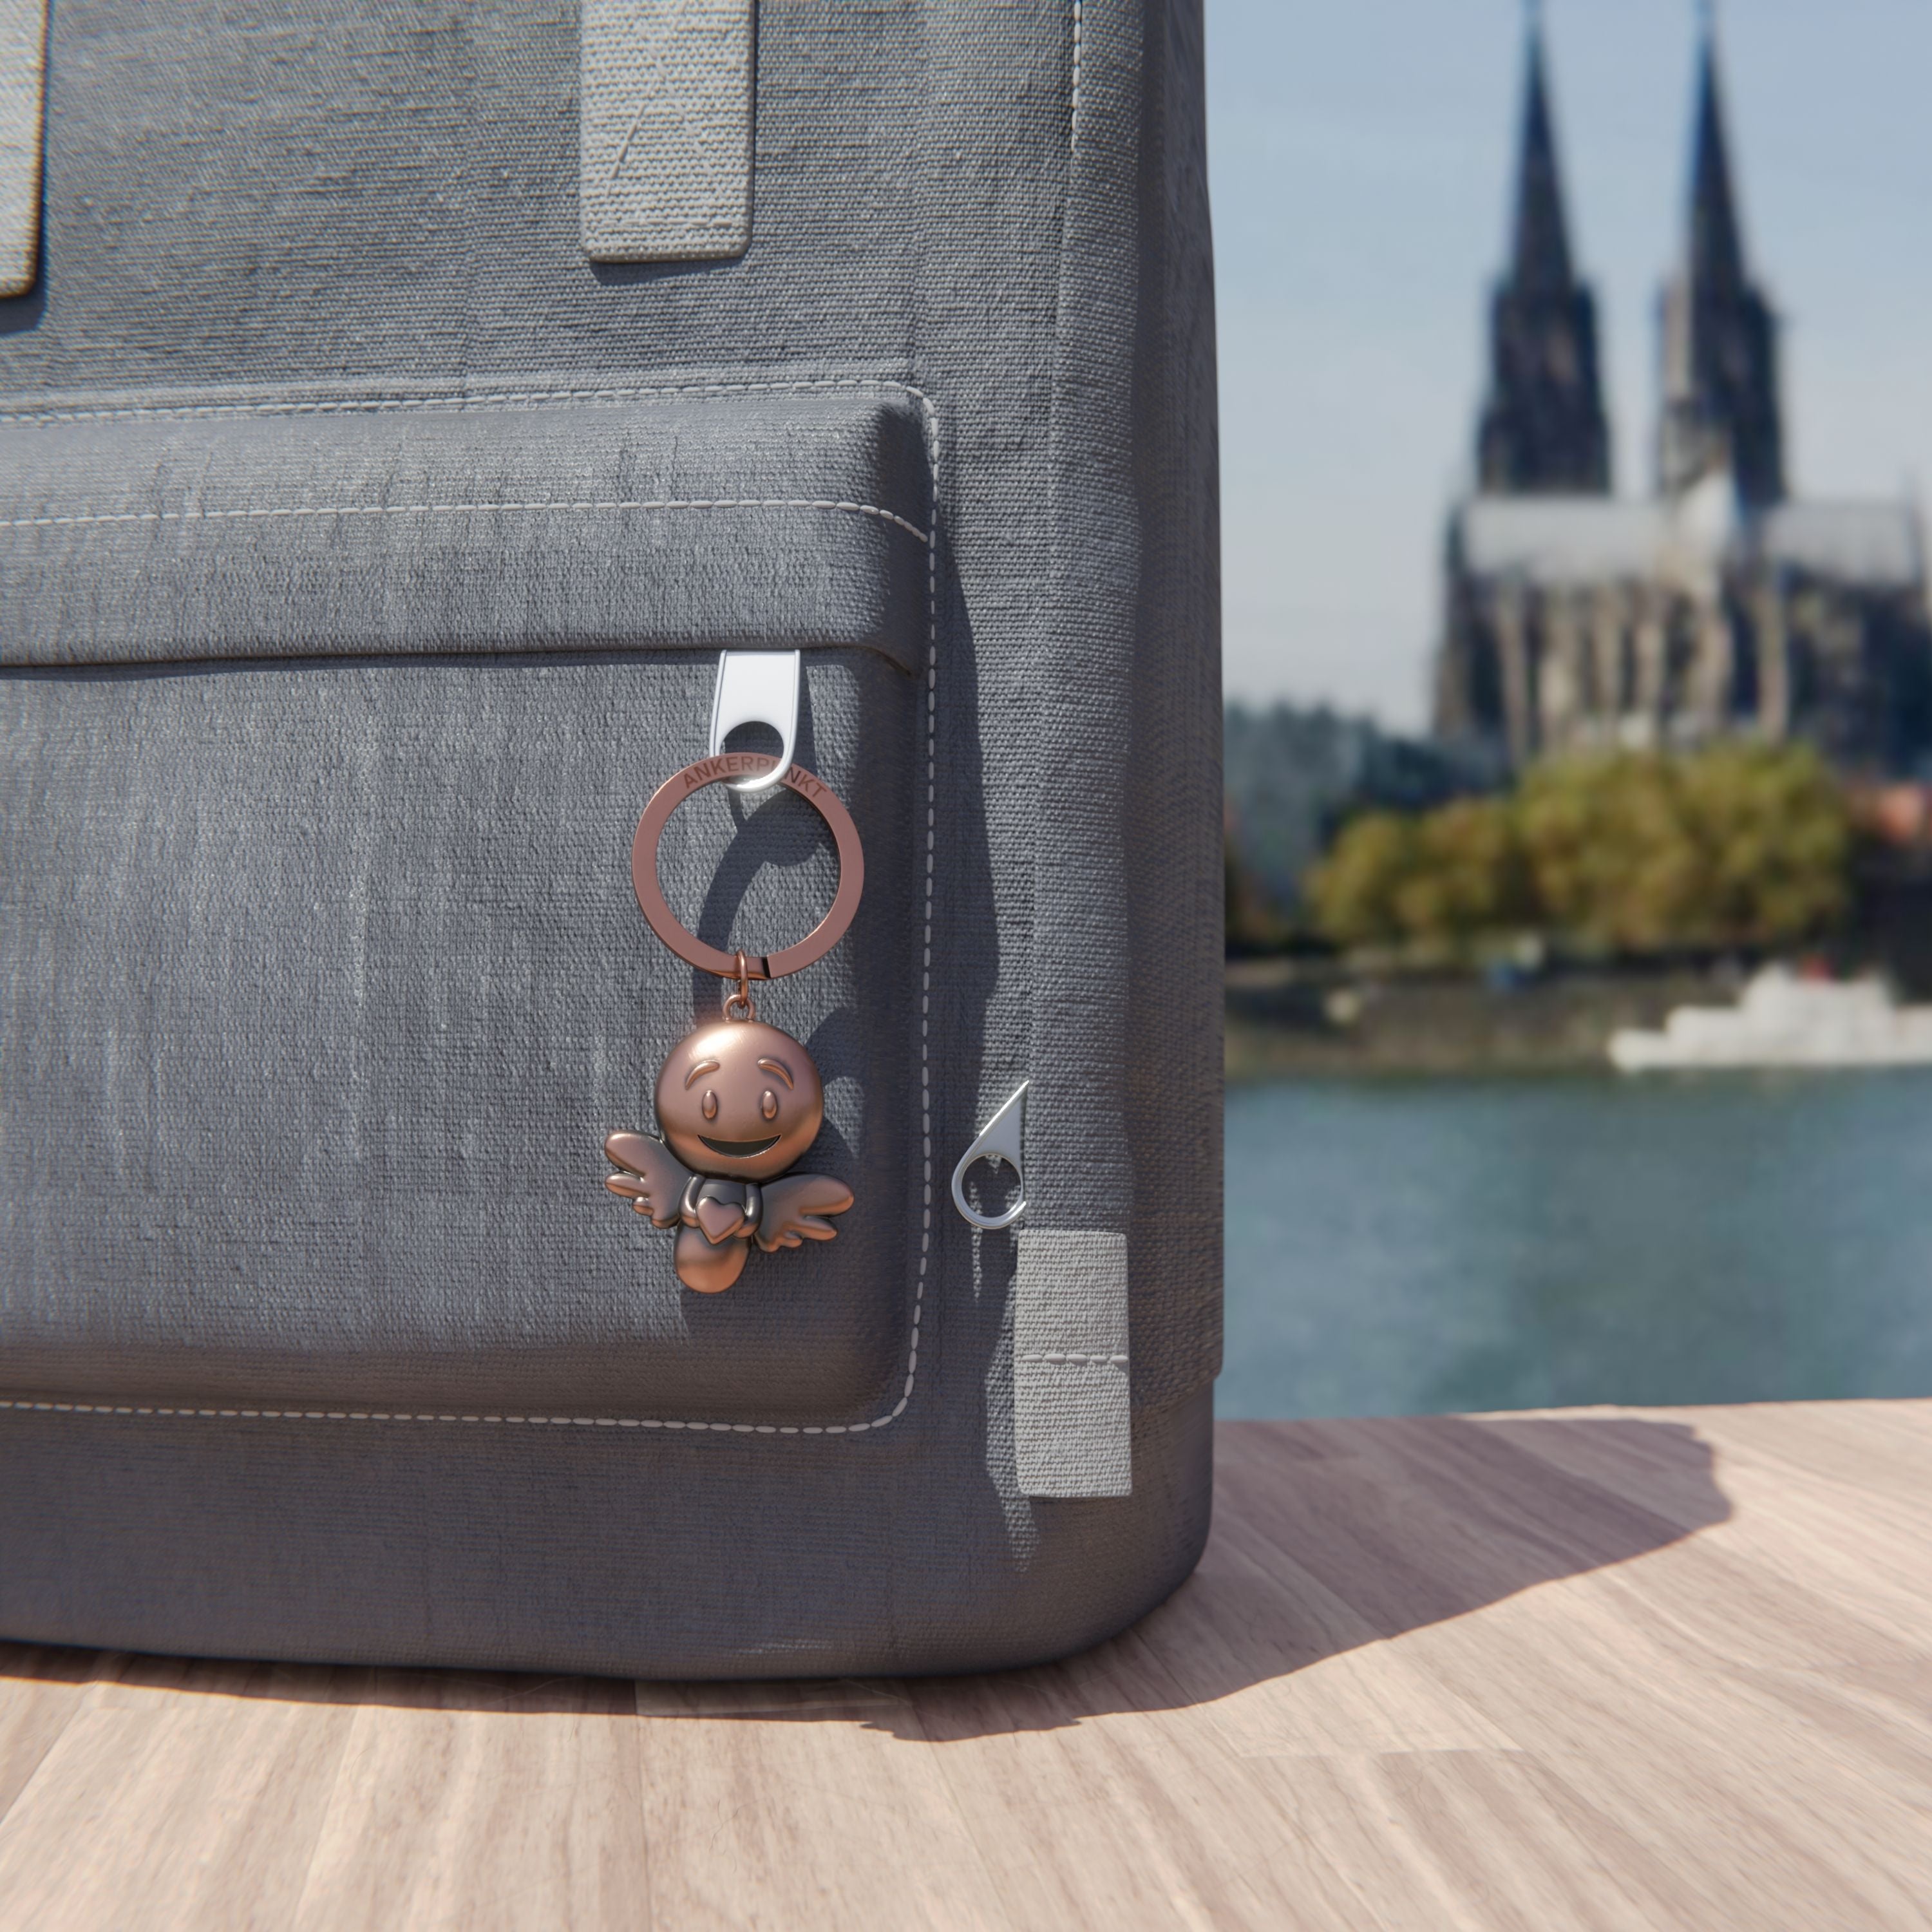 Schlüsselanhänger Lovely bronze vintage am Rucksack am Rhein, im Hintergrund ist der Kölner Dom zu sehen